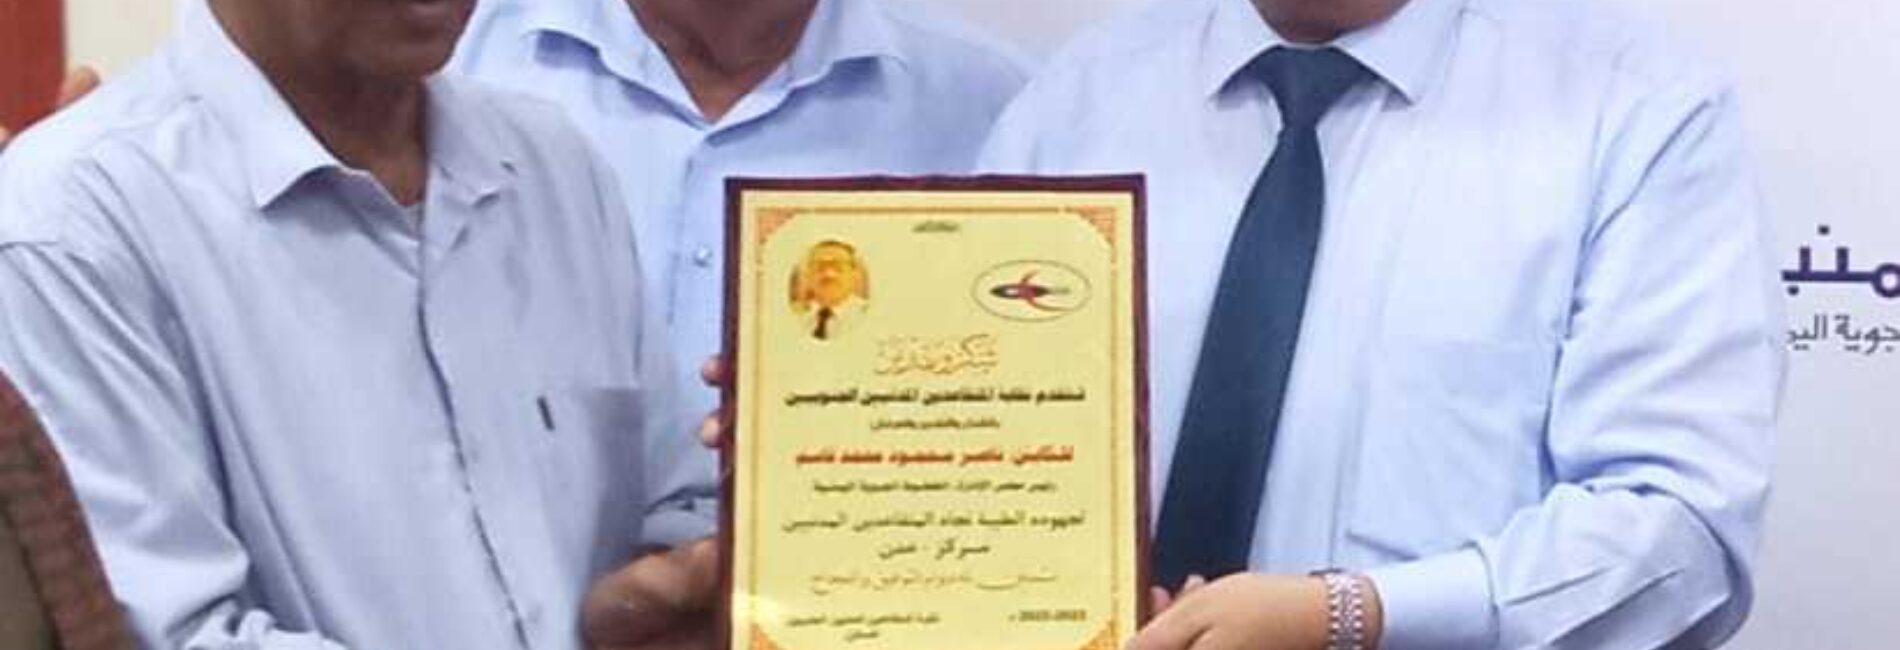 نقابة متقاعدي "اليمنية" تكرم رئيس مجلس الإدارة بدرع الشكر والعرفان